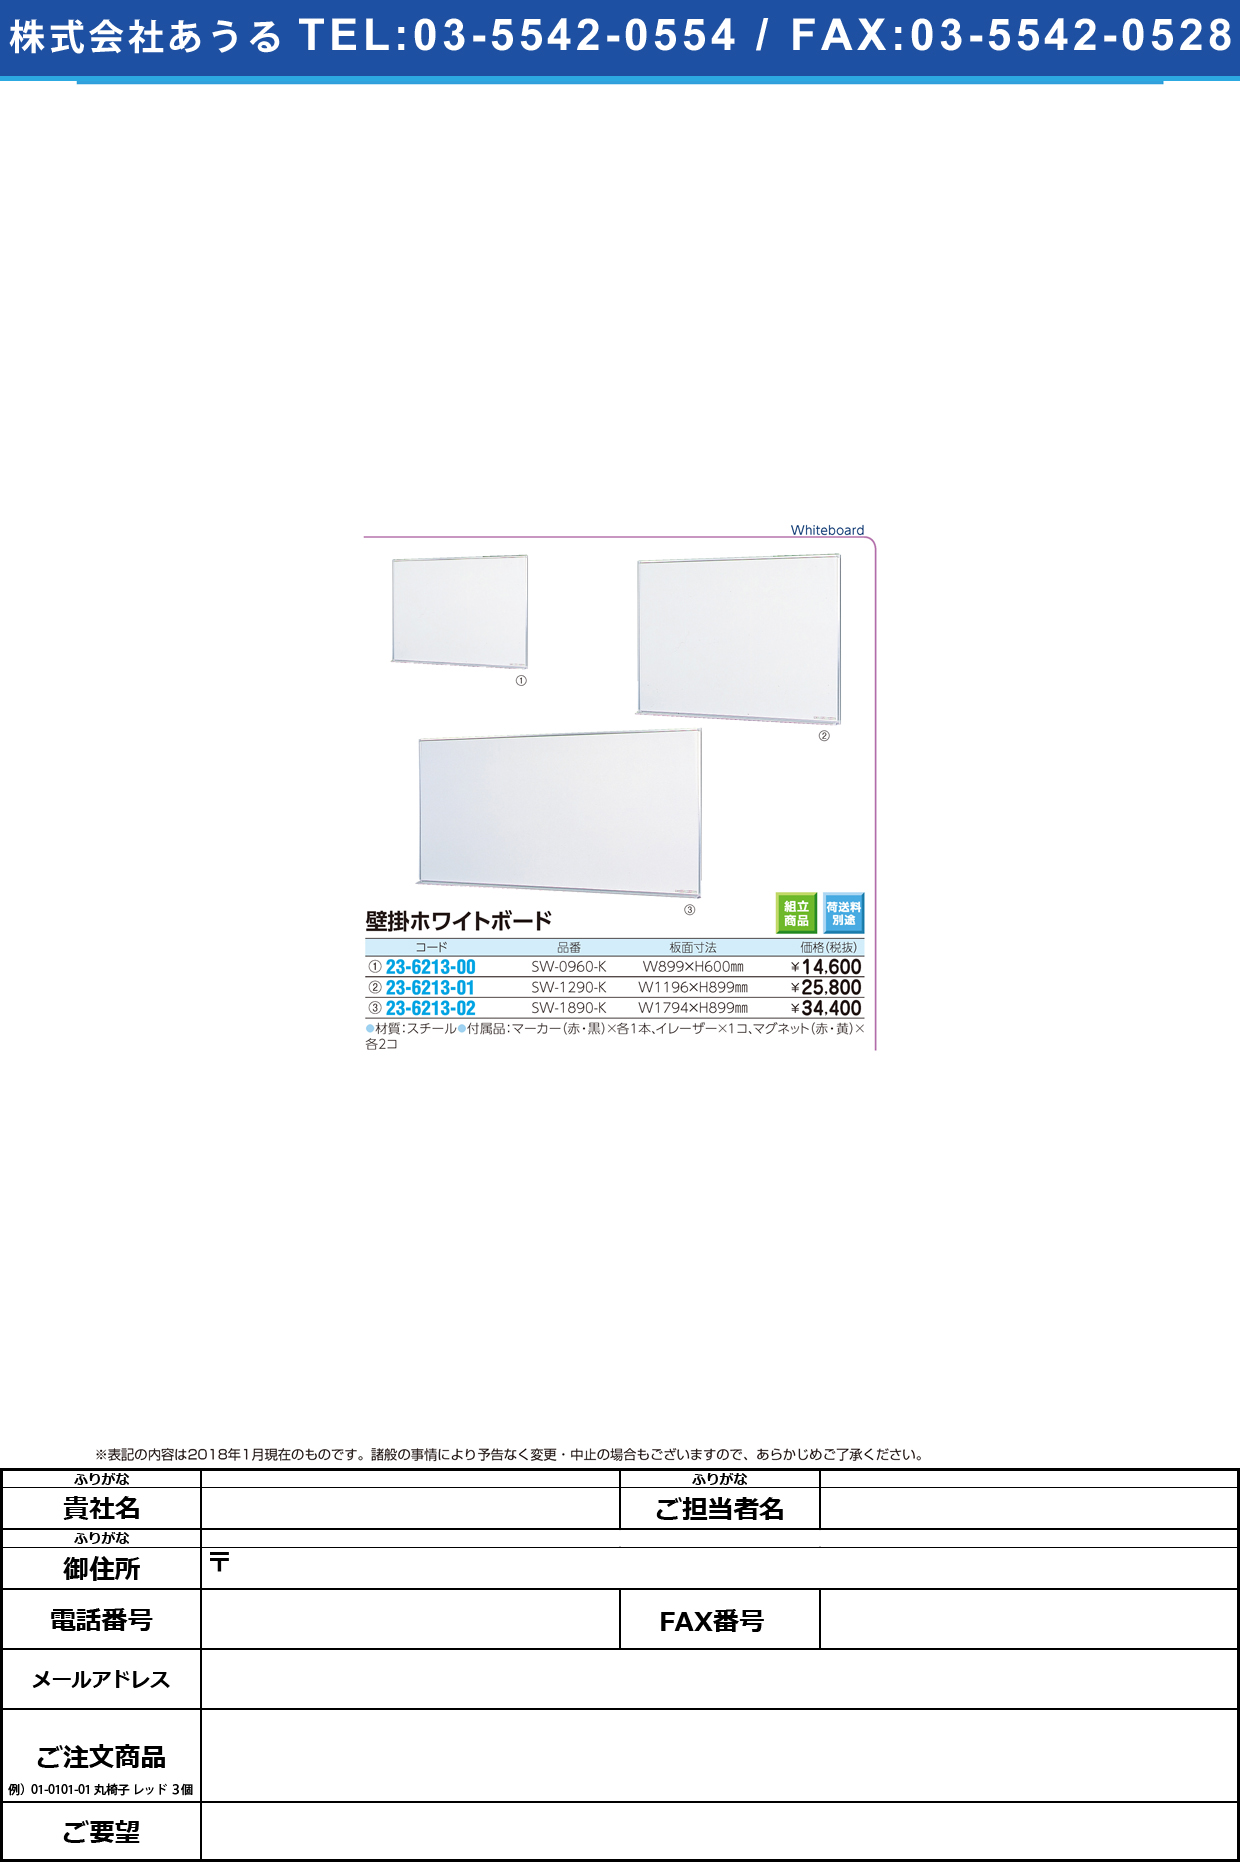 (23-6213-02)壁掛ホワイトボード SW-1890-K(1794X899) ｶﾍﾞｶｹﾎﾜｲﾄﾎﾞｰﾄﾞ【1台単位】【2019年カタログ商品】